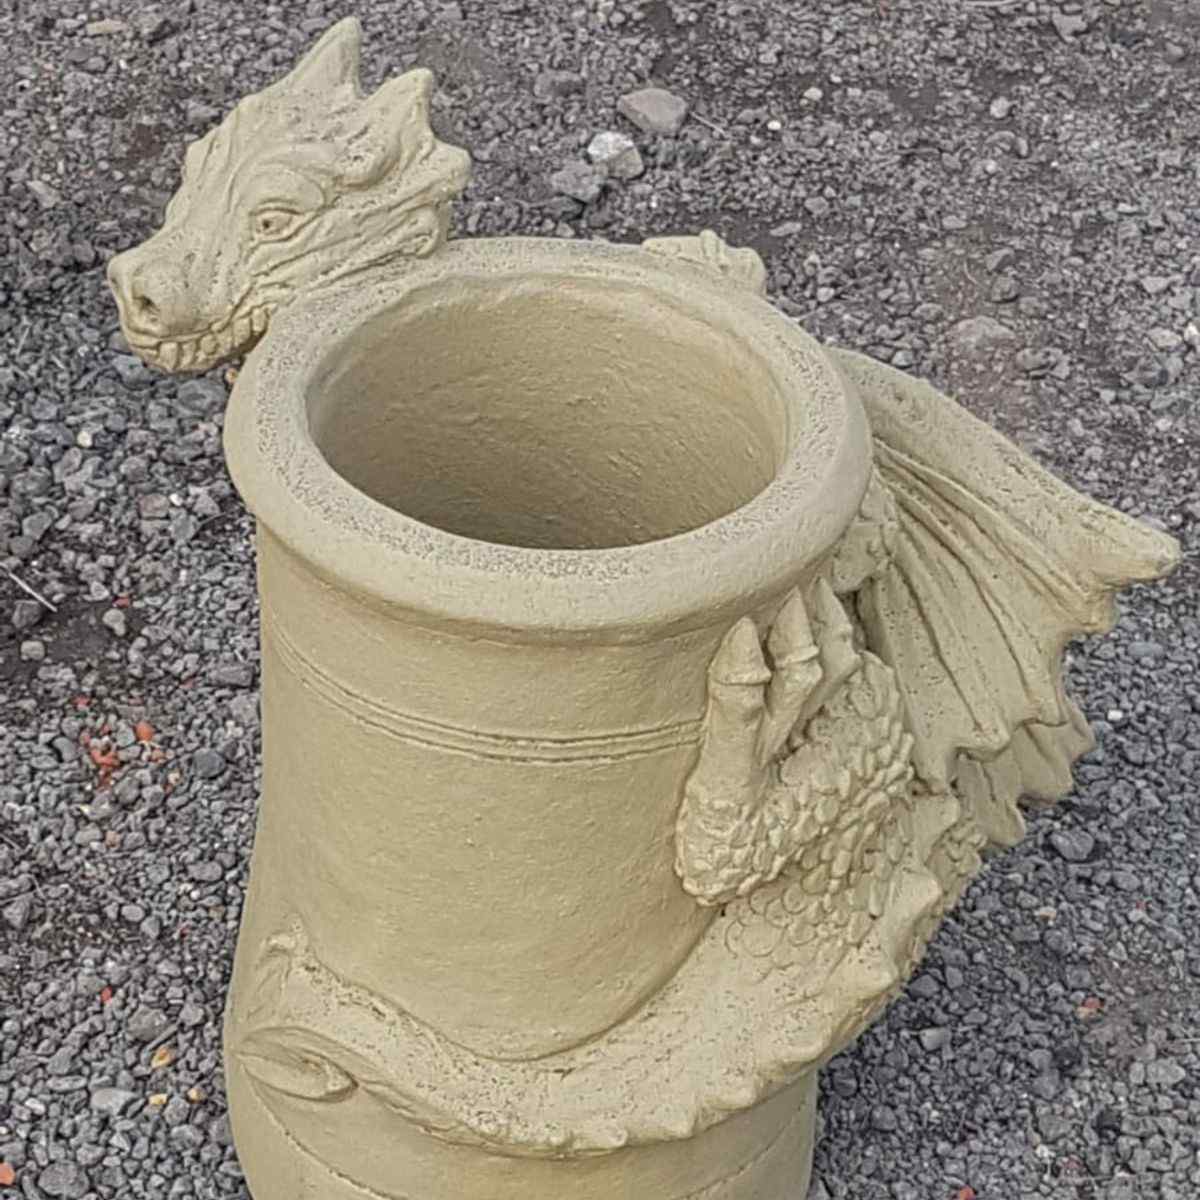 Smirk bathstone dragon chimney pot 4